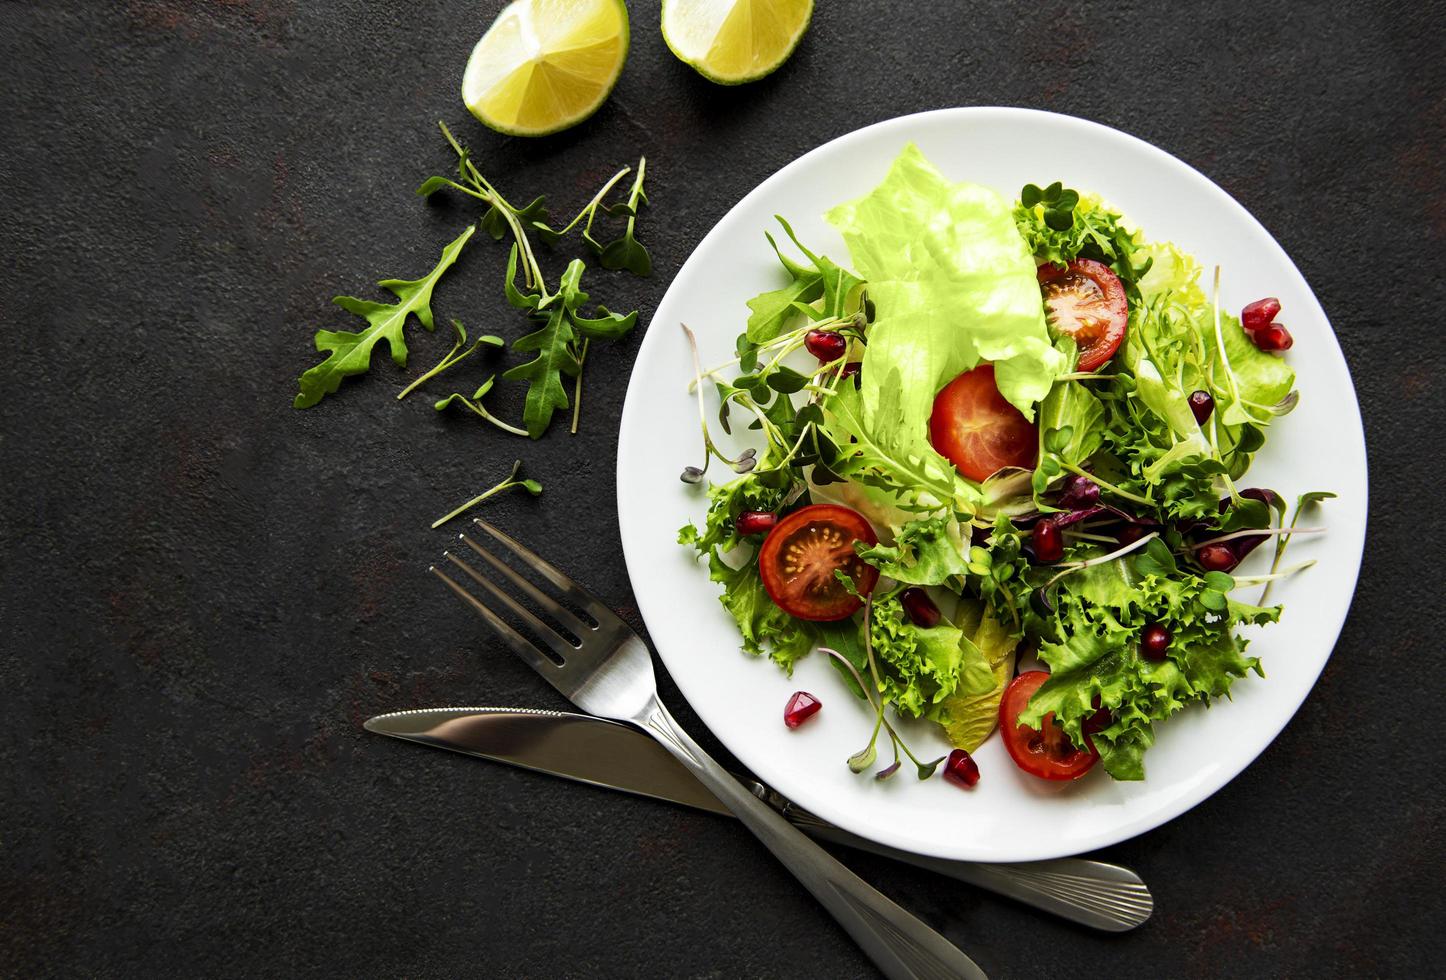 Salade mixte verte fraîche avec des tomates et des microgreens sur fond de béton noir photo